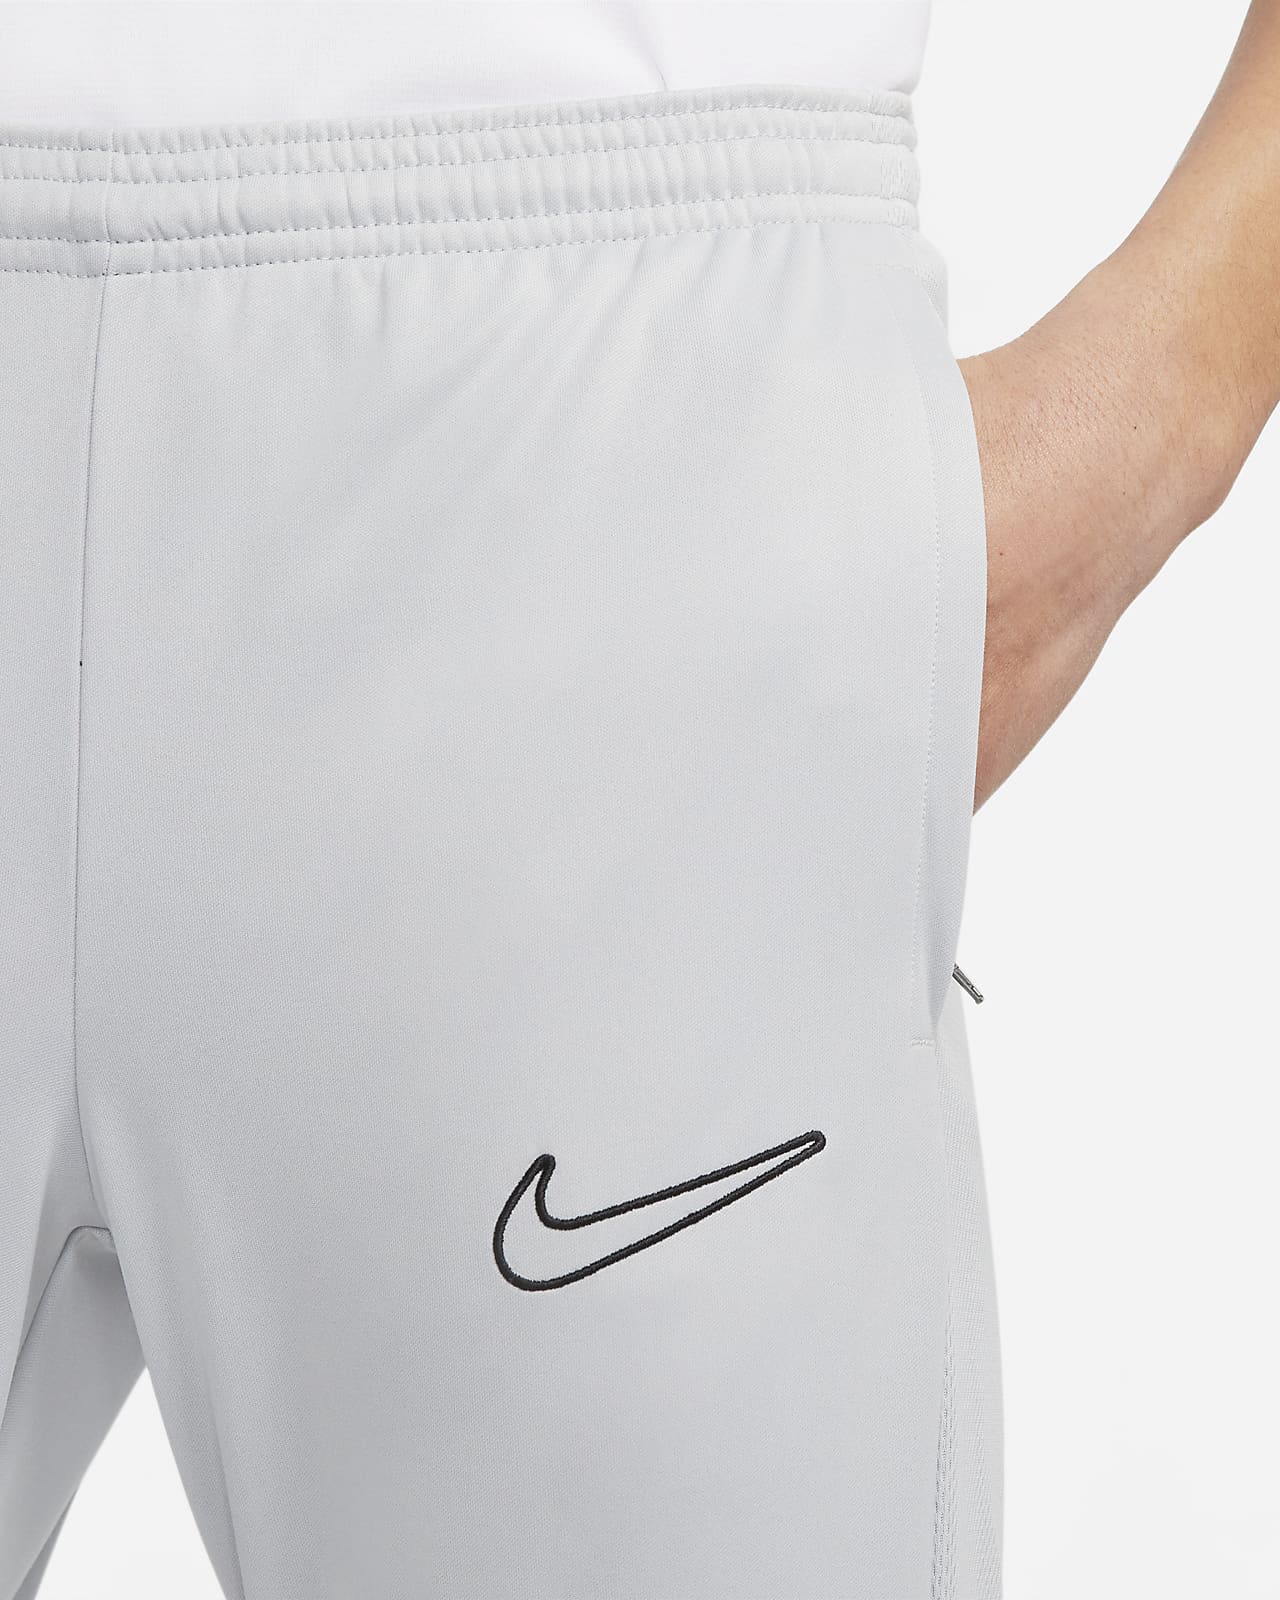 超歓迎された】 Nike pants ナイキトレーニングドライアカデミーサッカーパンツXL